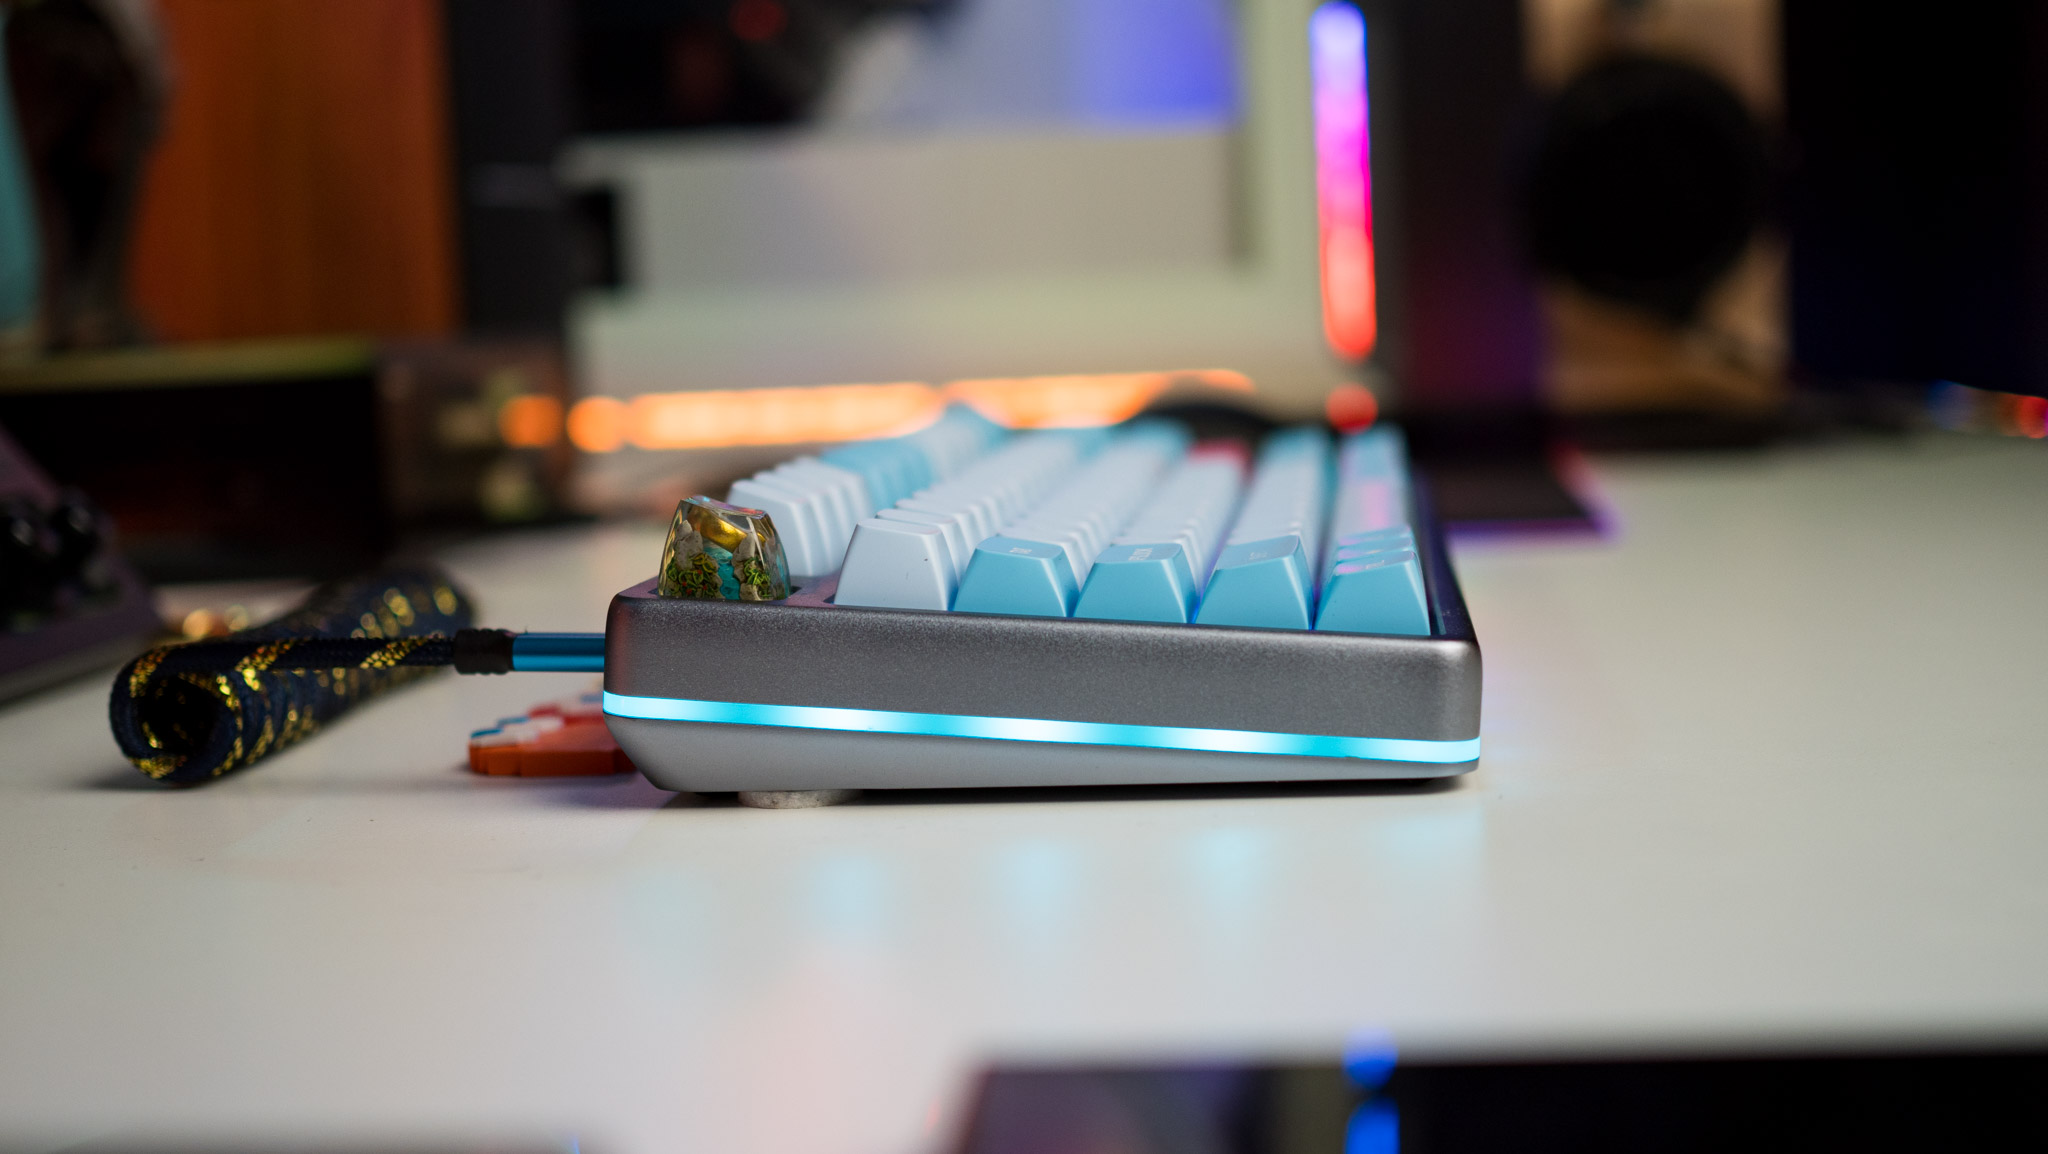 Drop Americana Keyboard con vista lateral que muestra iluminación RGB